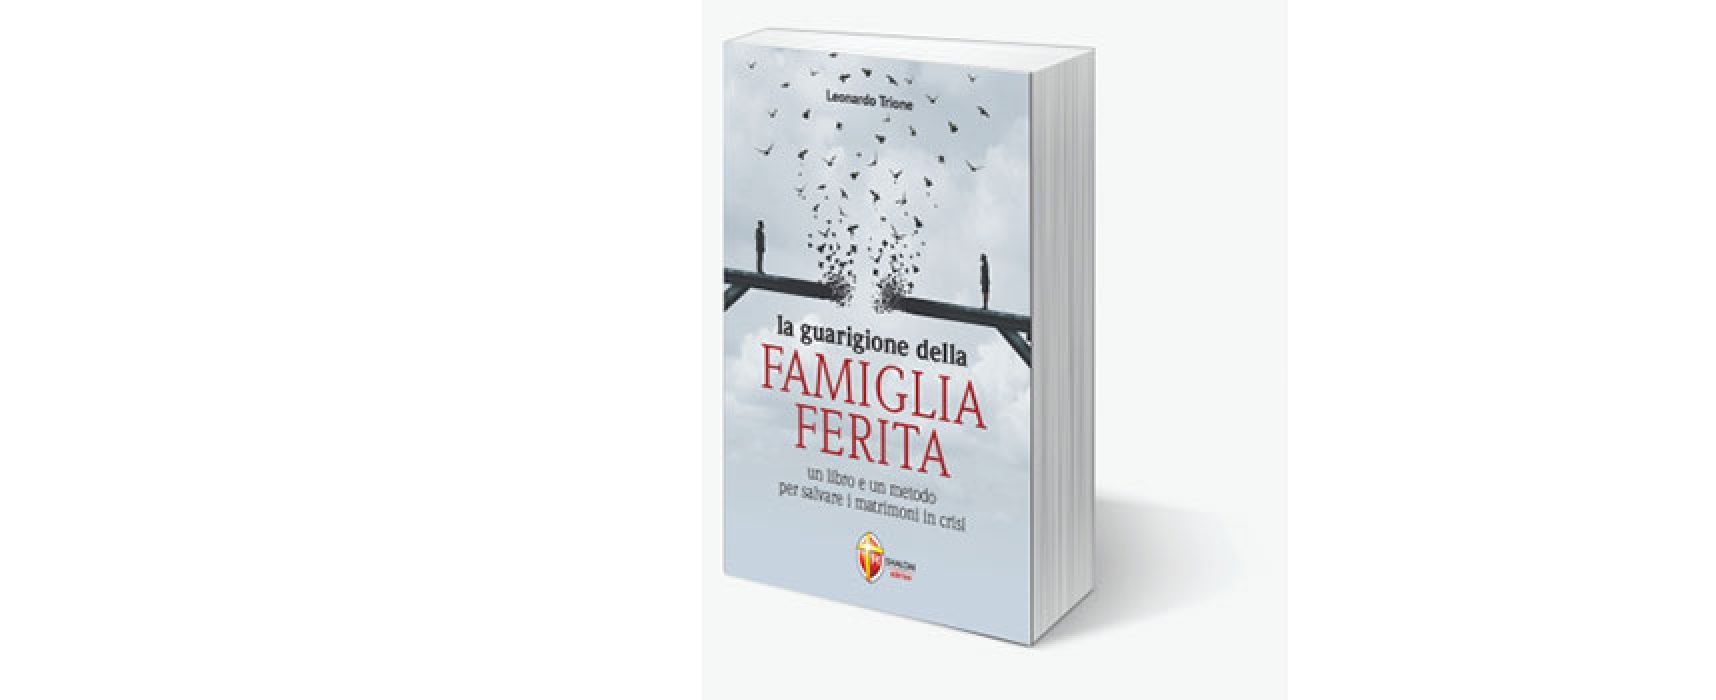 Leonardo Trione presenta il suo libro “La guarigione della famiglia ferita”